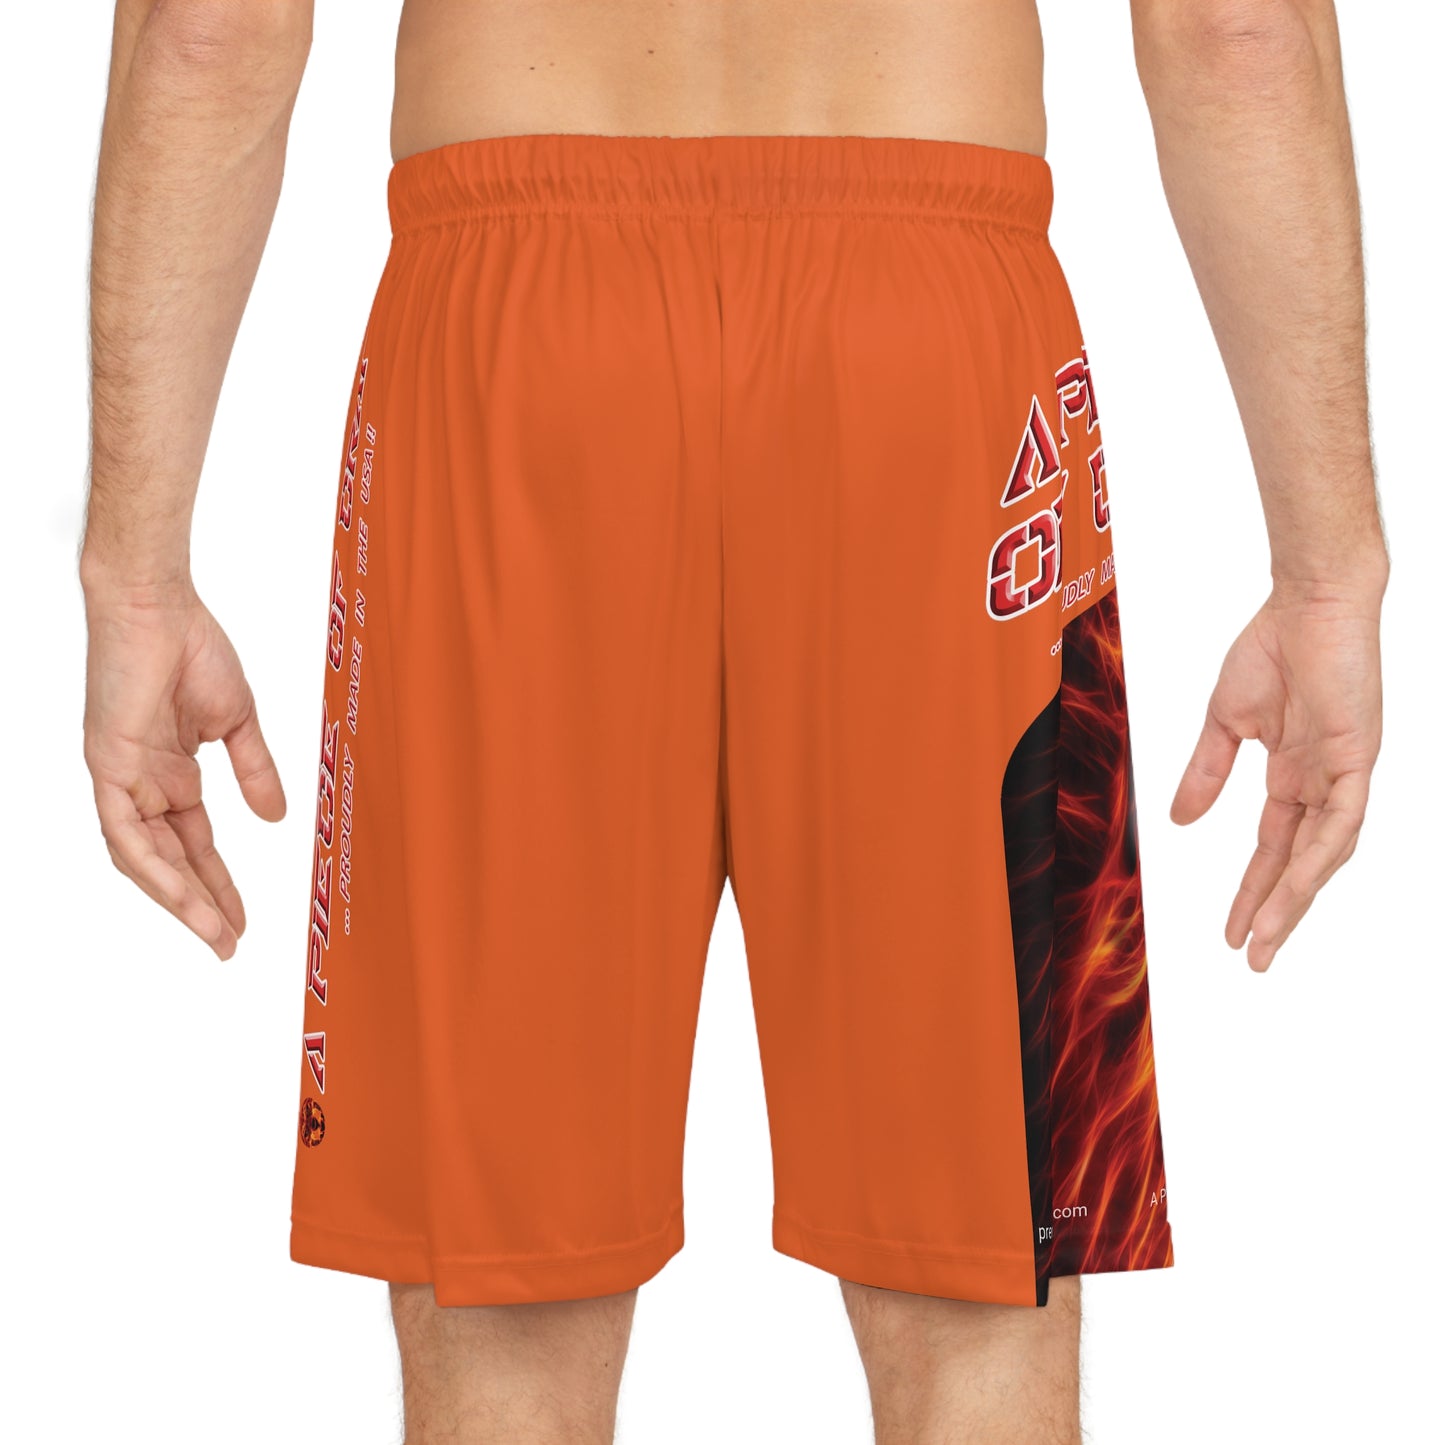 A Piece Of Crap BougieBooty Baller Shorts - Orange